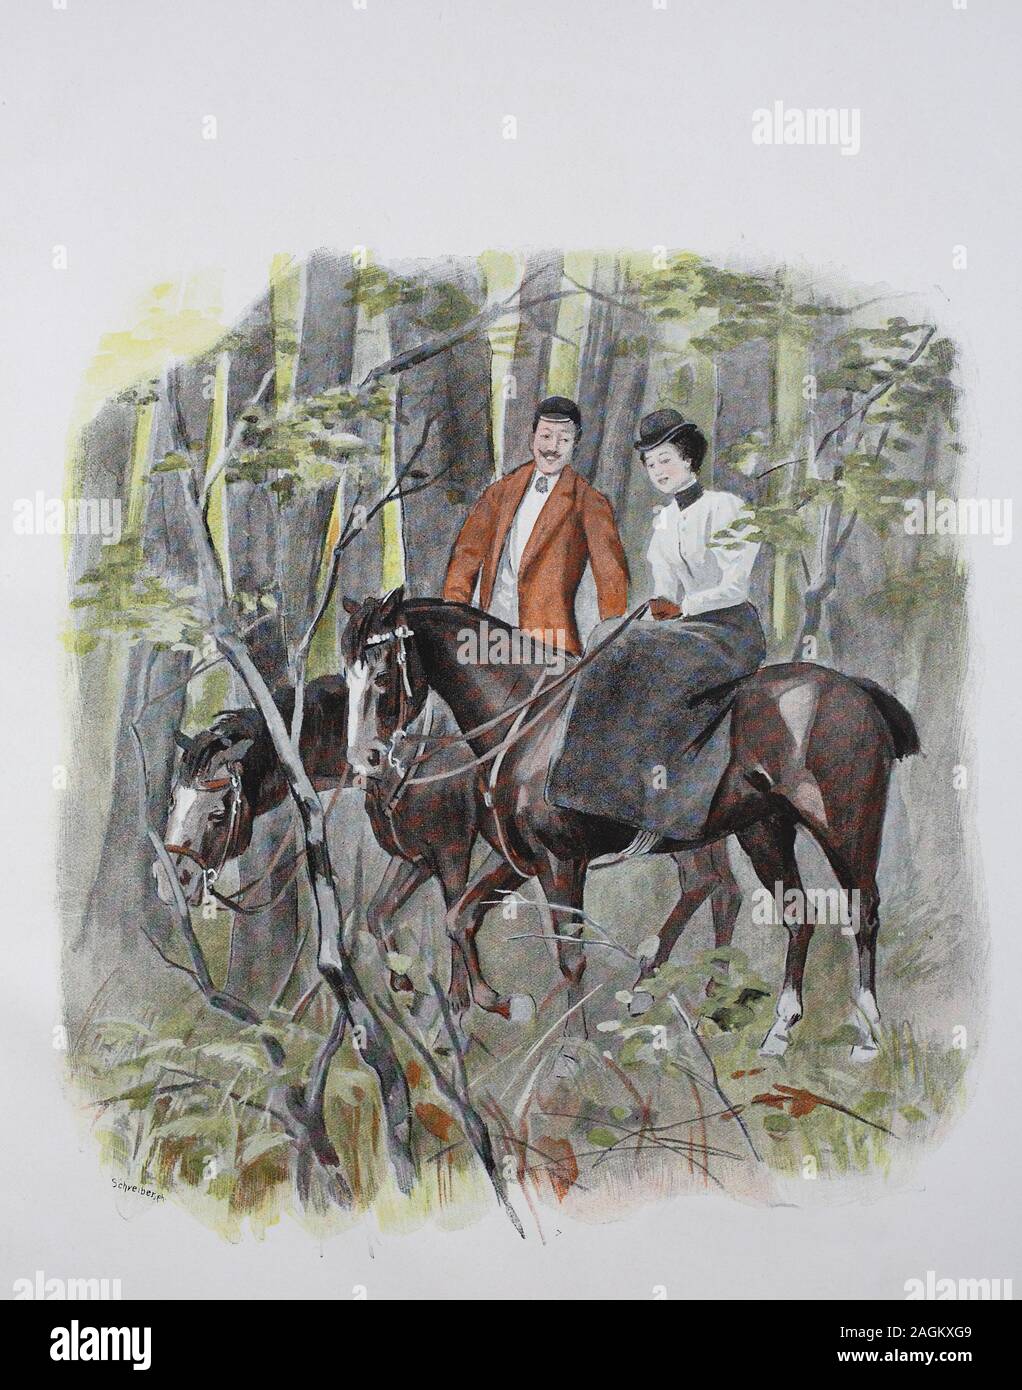 Couple rides on horses in the forest, original print from the year 1899, Paar reitet auf Pferden im Wald, Reproduktion einer Originalvorlage aus dem 19. Jahrhundert, digital verbessert Stock Photo